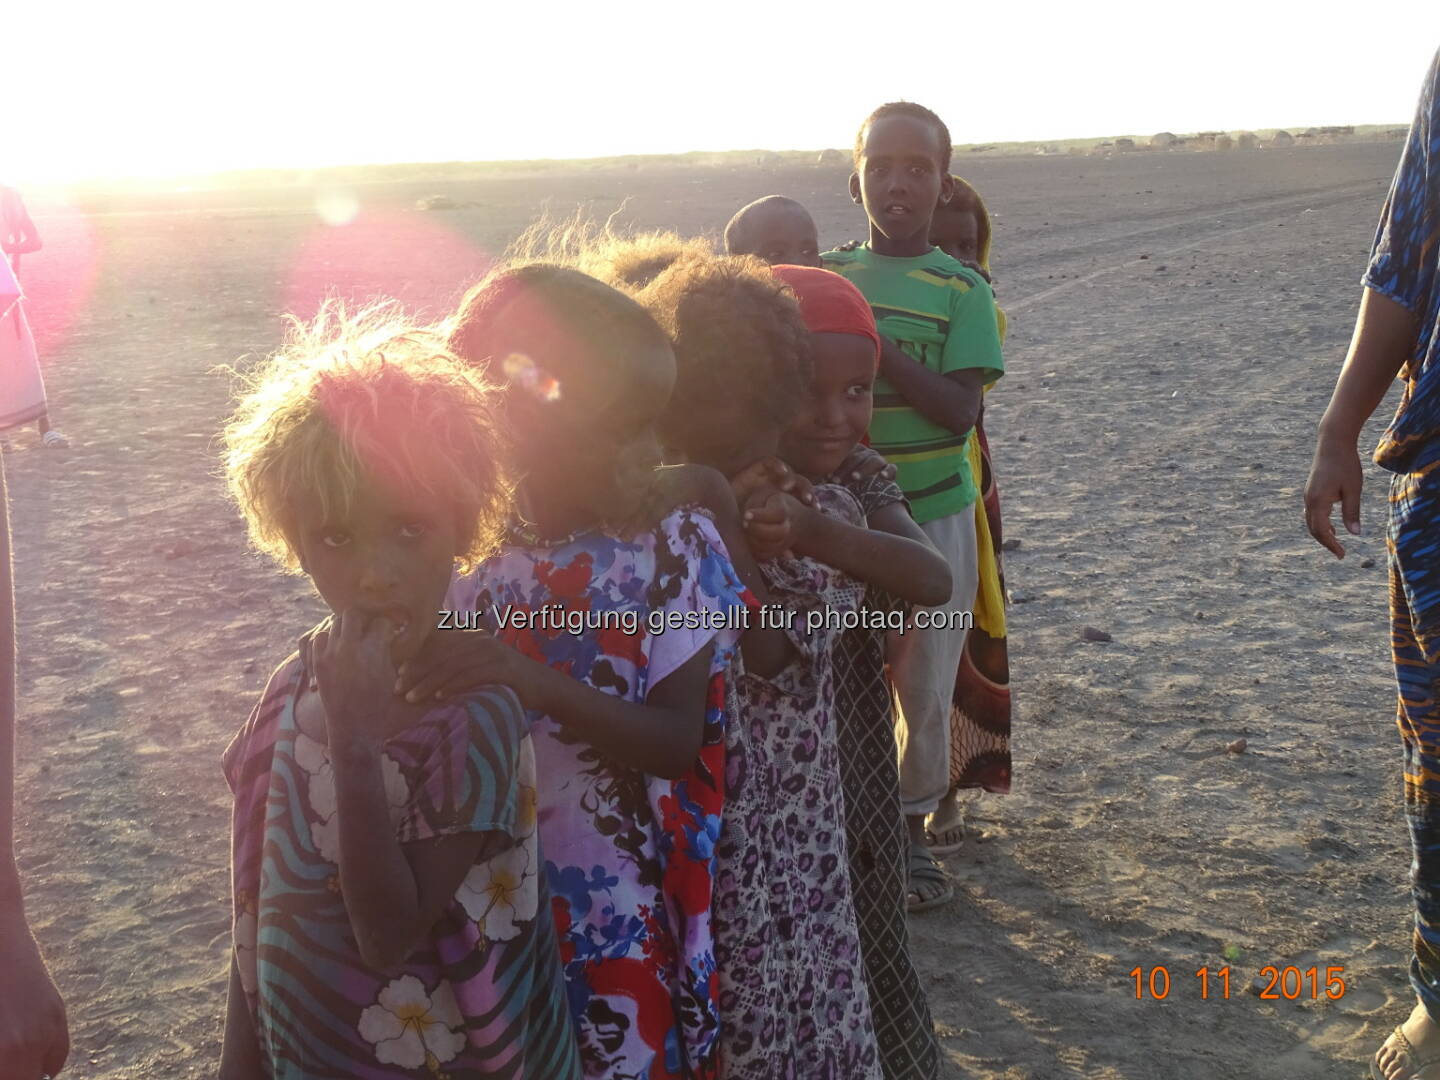 Kinder bei der Lebensmittelverteilung : In Äthiopien herrscht die schlimmste Dürre seit mehr als 30 Jahren, zehn Millionen Menschen hungern : Die Kindernothilfe stellt 800.000 Euro für Soforthilfe zur Verfügung : Fotocredit: Kindernothilfepartner